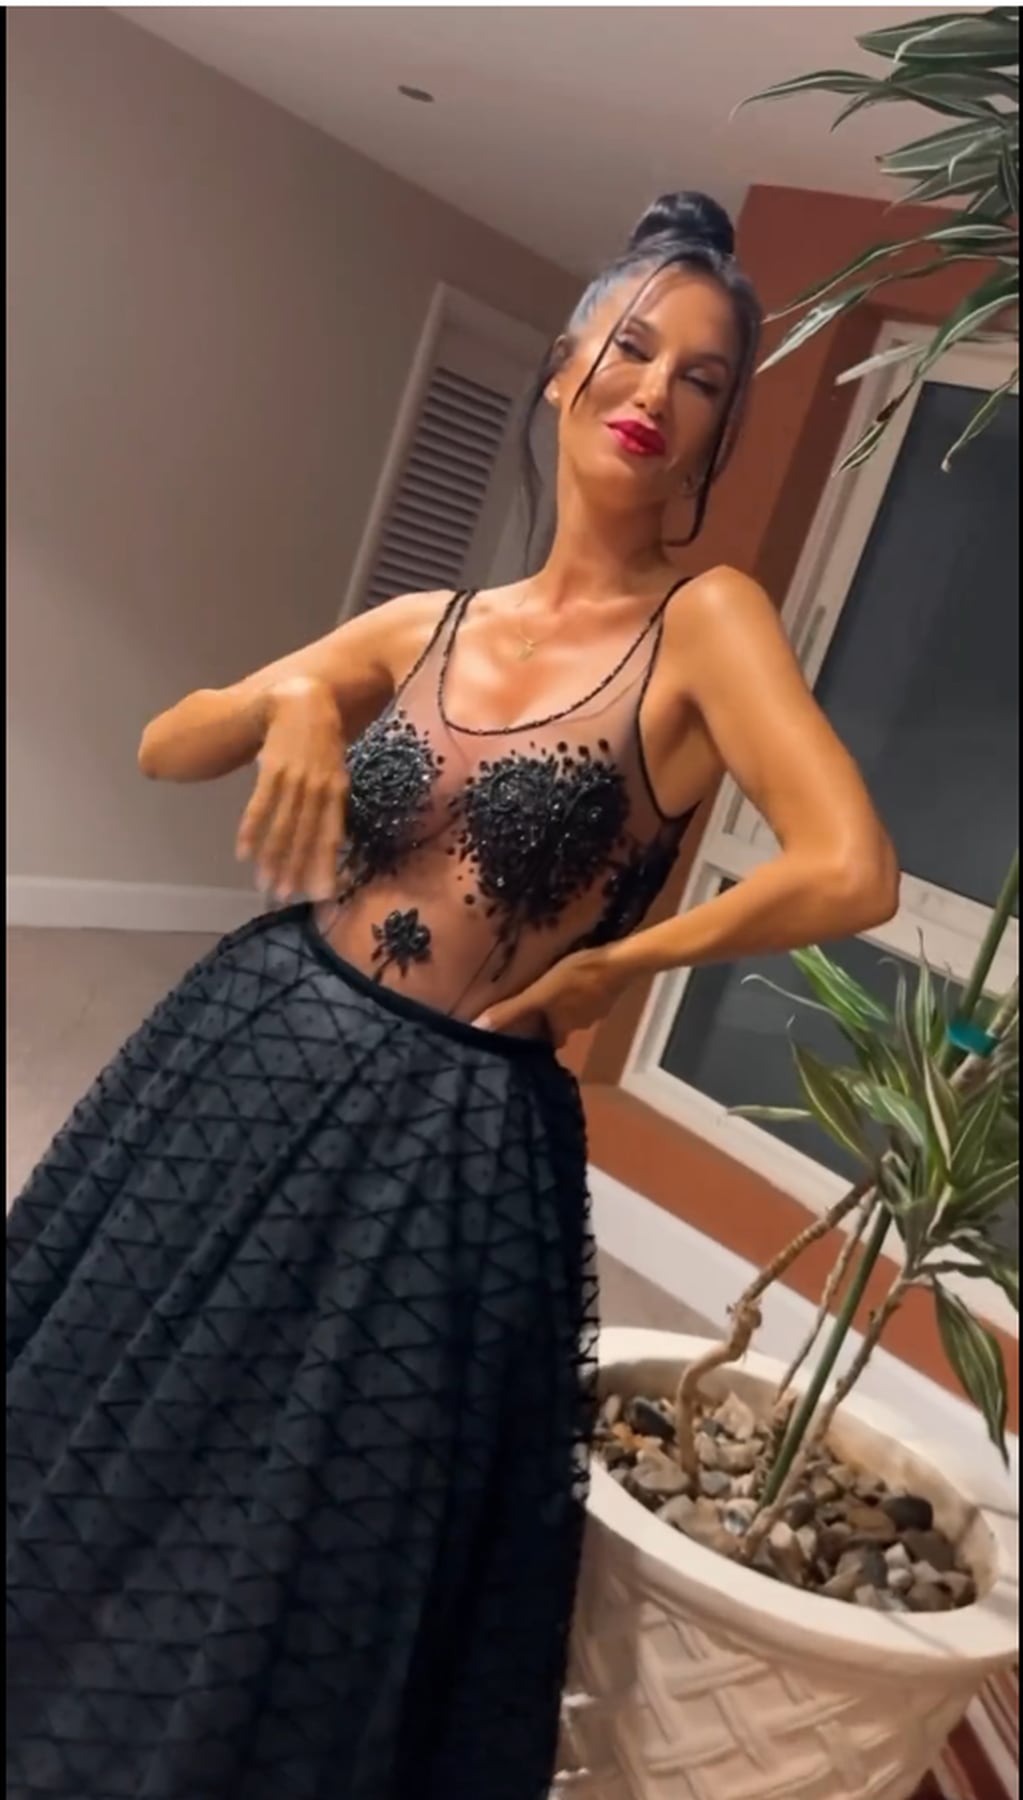 Silvina Escudero posó con un look total black con transparencias ultra sensual